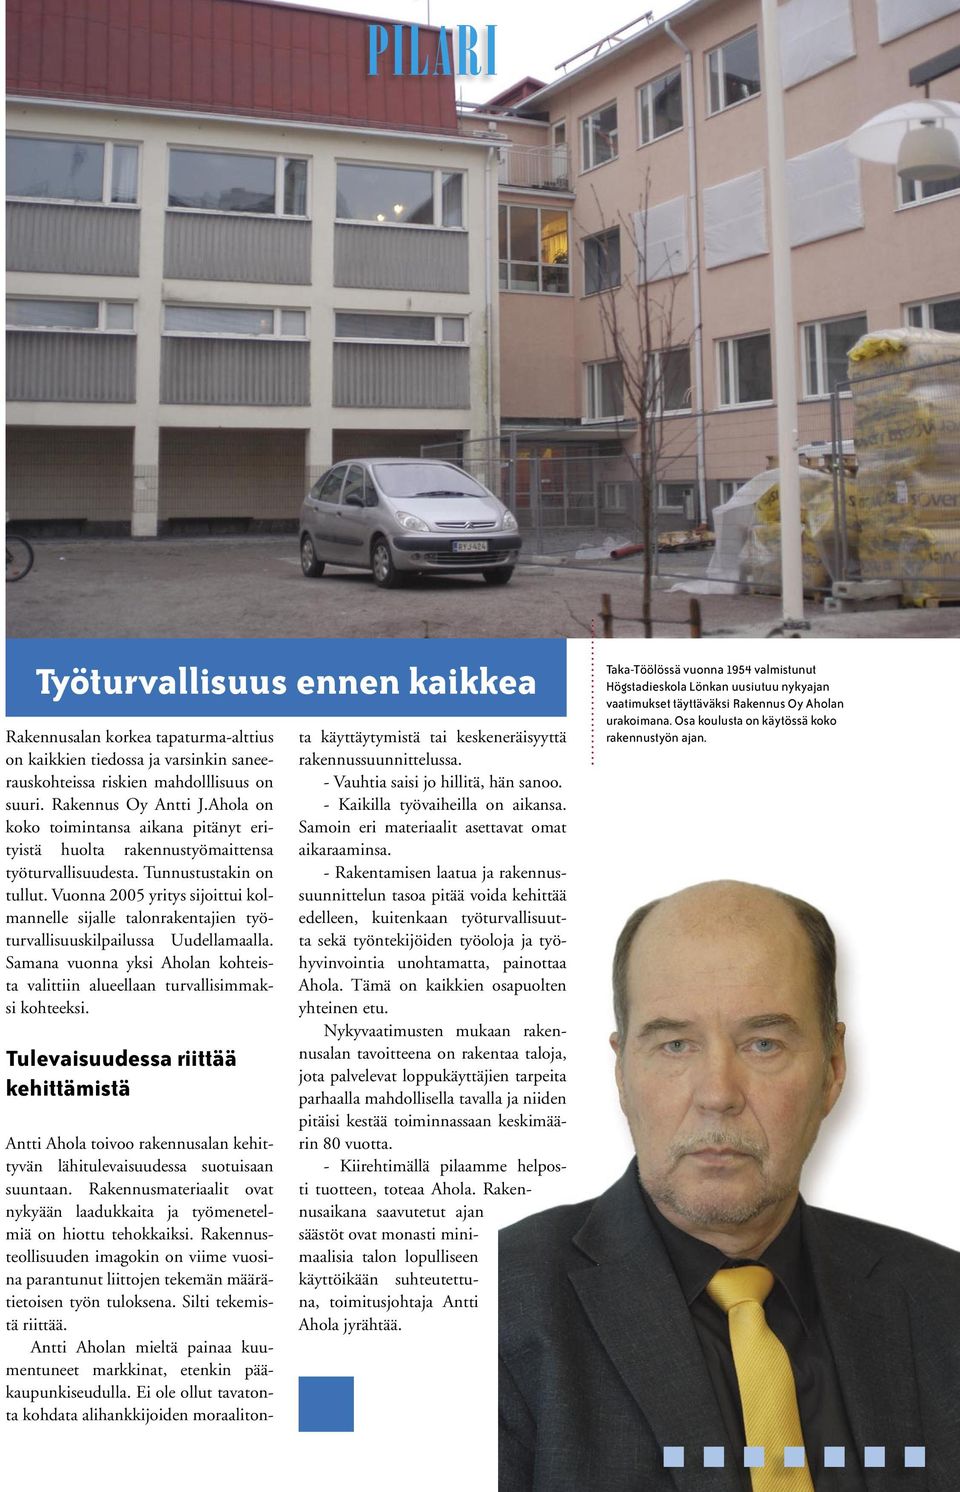 Vuonna 2005 yritys sijoittui kolmannelle sijalle talonrakentajien työturvallisuuskilpailussa Uudellamaalla. Samana vuonna yksi Aholan kohteista valittiin alueellaan turvallisimmaksi kohteeksi.